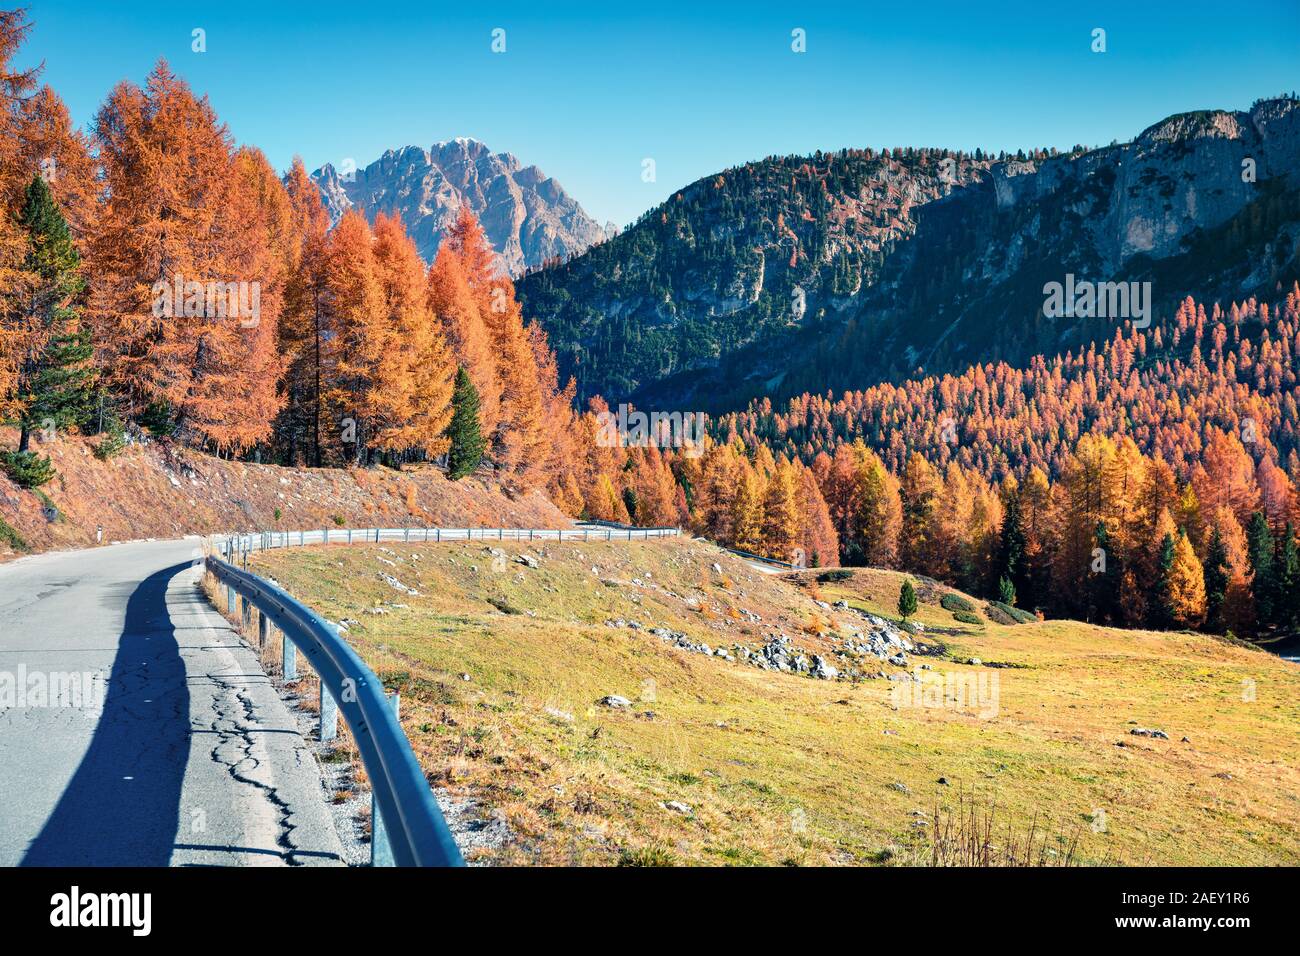 Fantastische Sunny View der Dolomiten mit gelben Lärchen. Bunte Herbst Szene in die Berge. Giau Lage, Italien, Europa. Stockfoto